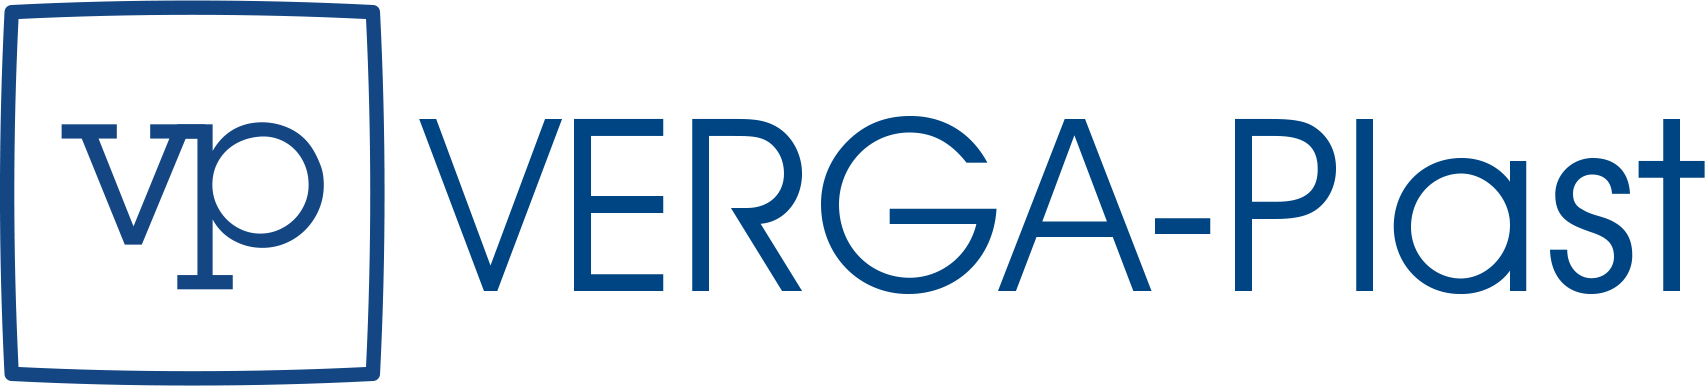 Logotipo de VERGA-Plast